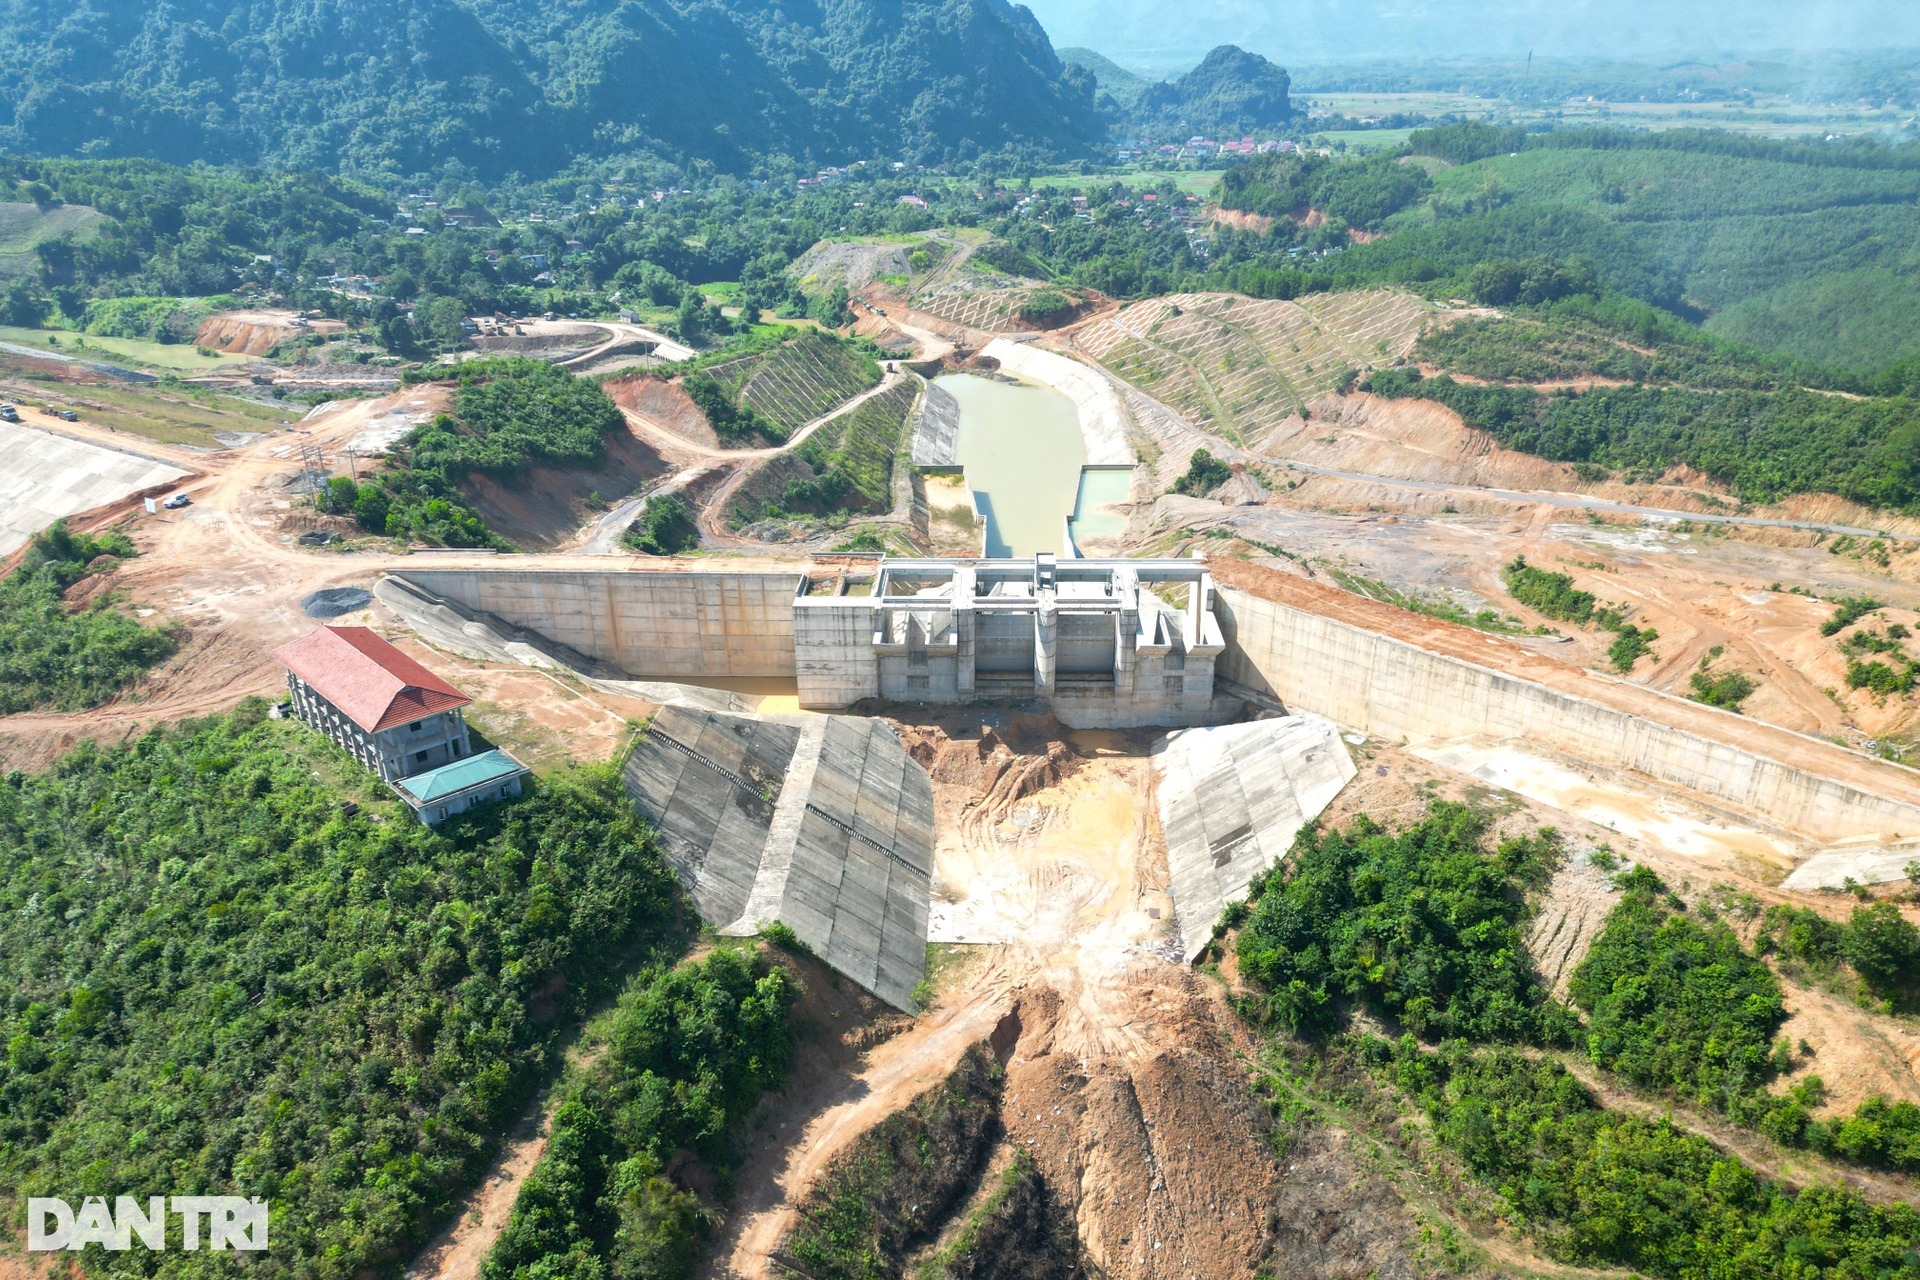 Toàn cảnh đại công trường hồ chứa nước có đập đất cao bậc nhất Việt Nam - Ảnh 3.